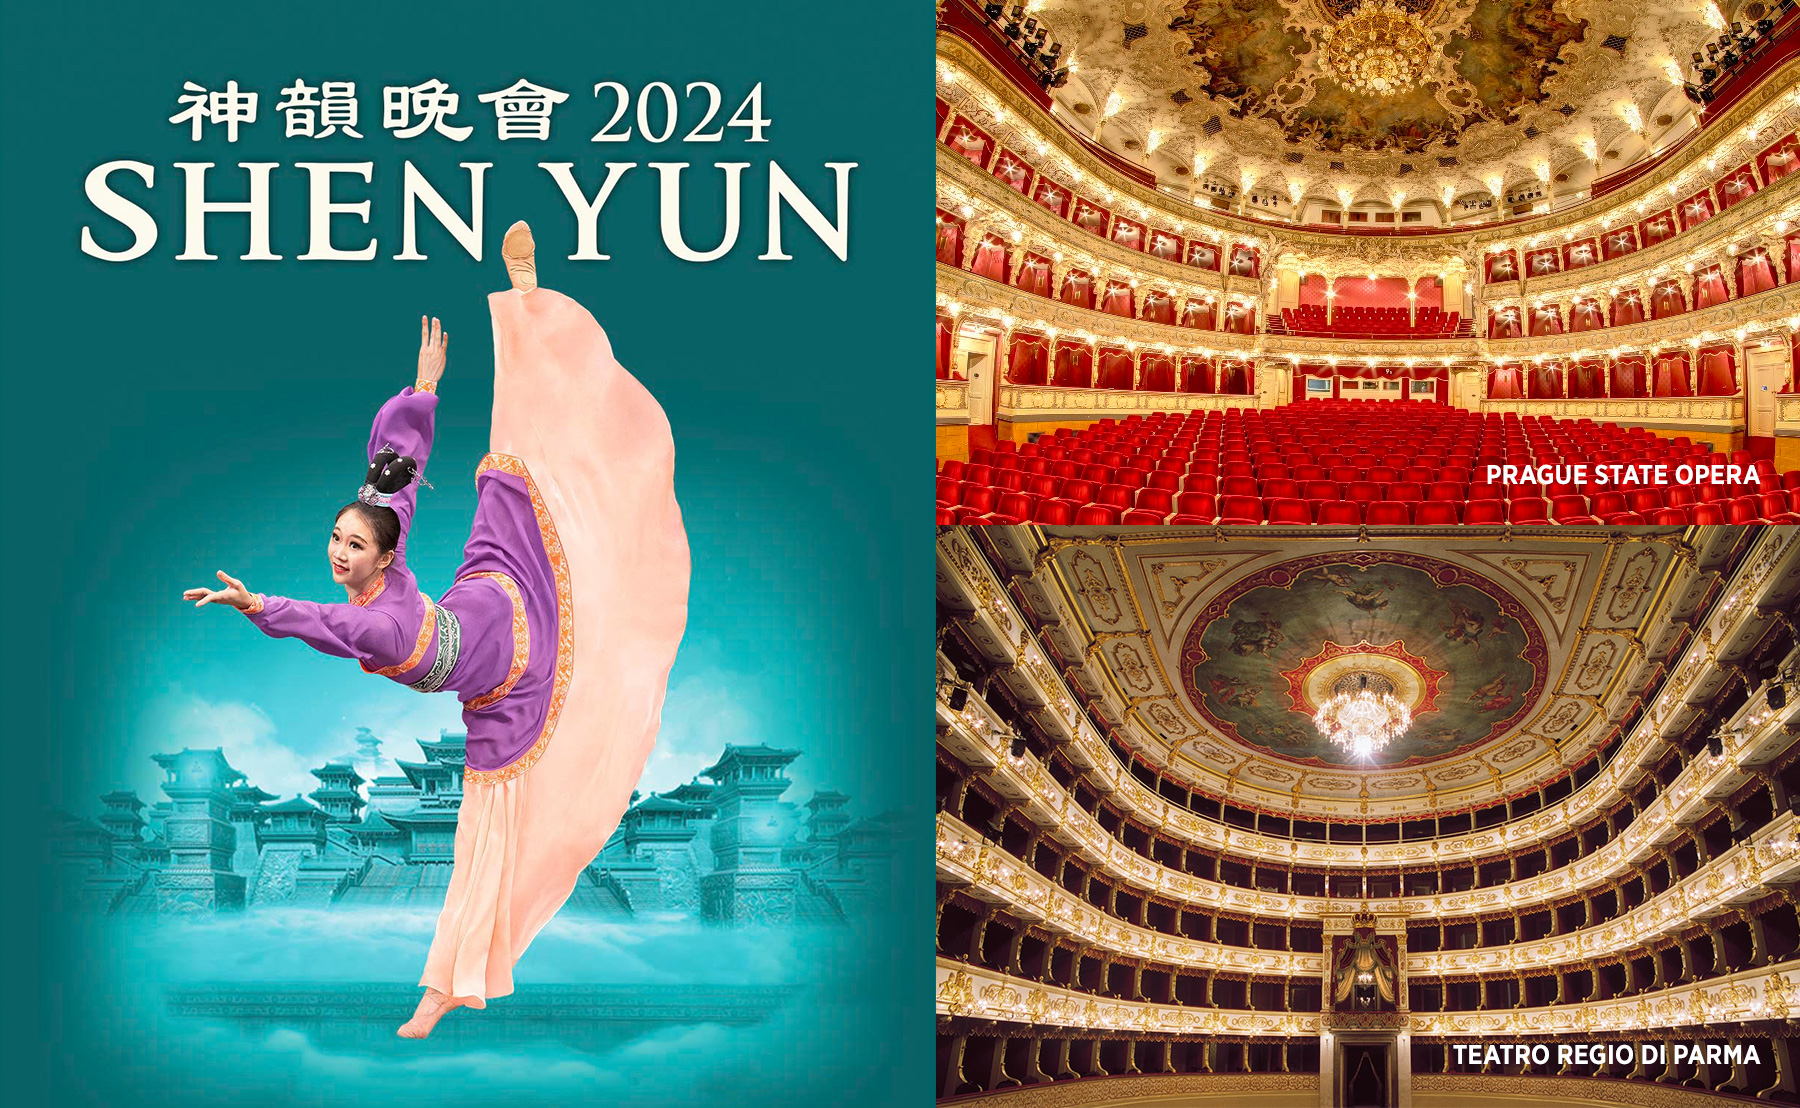 神韻芸術団 | Shen Yun 2024 is Ready for Takeoff (日本語)